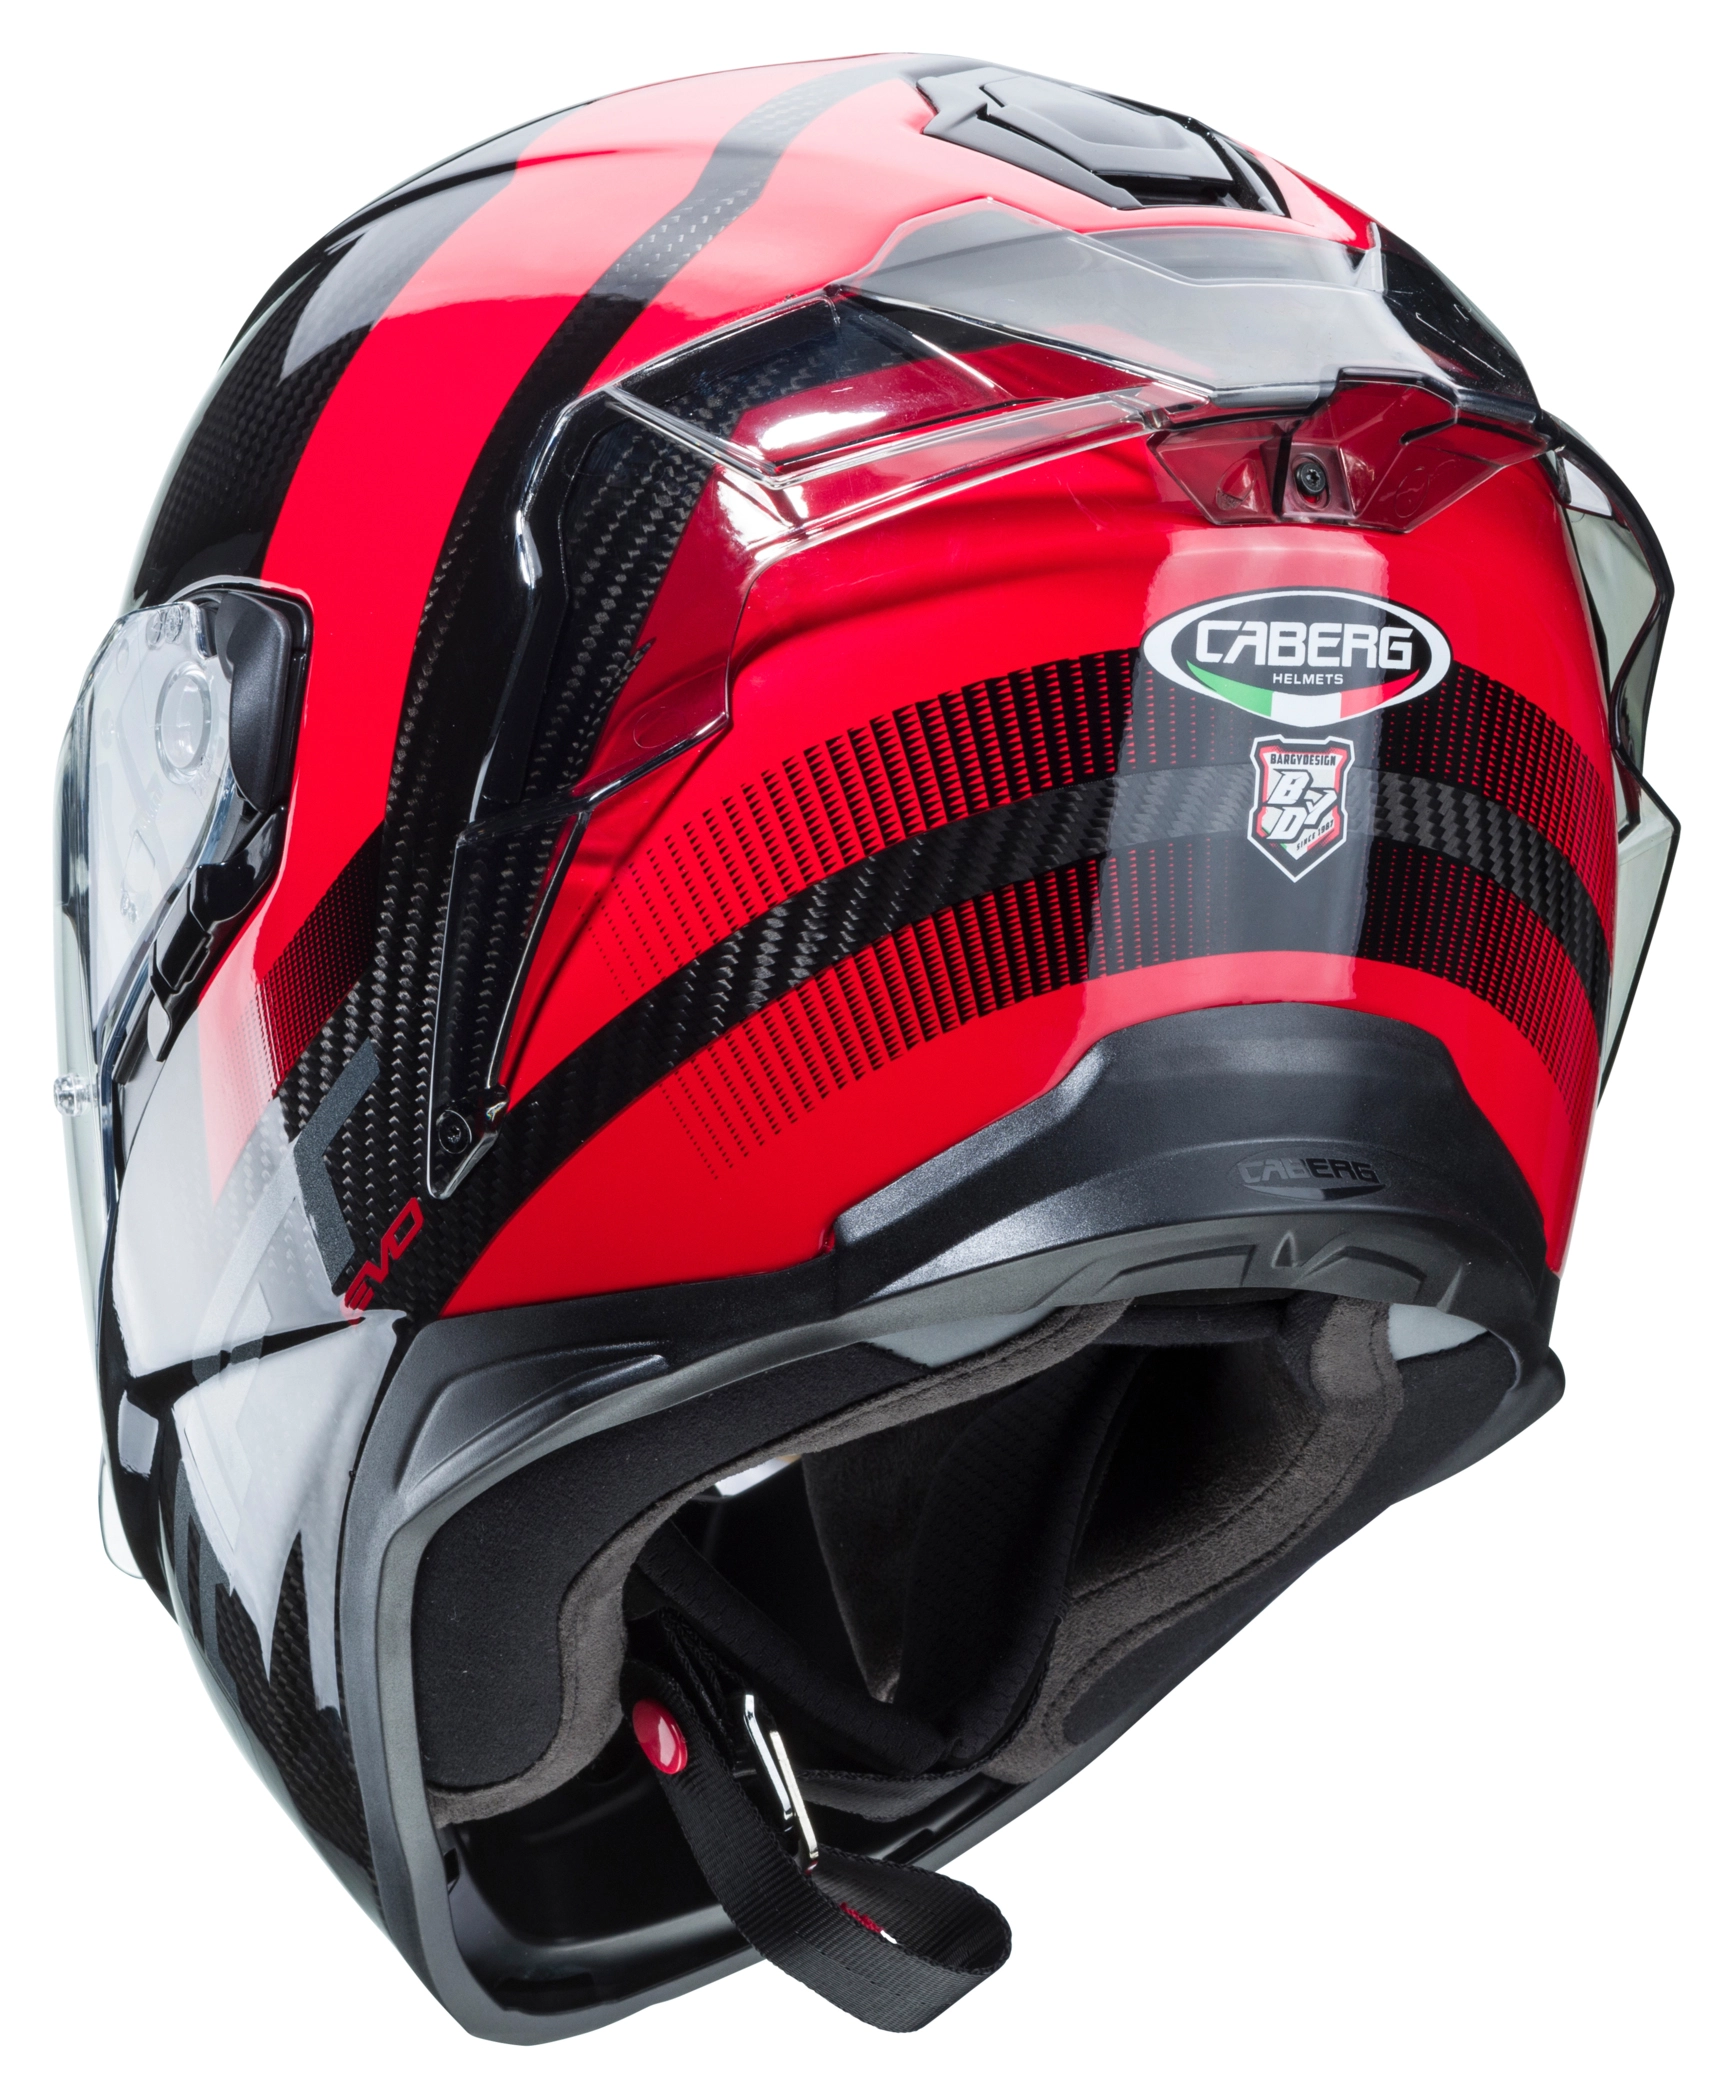 Abbigliamento Moto e Accessori - Cavalletto Alza Moto Motocross Sonic Moto